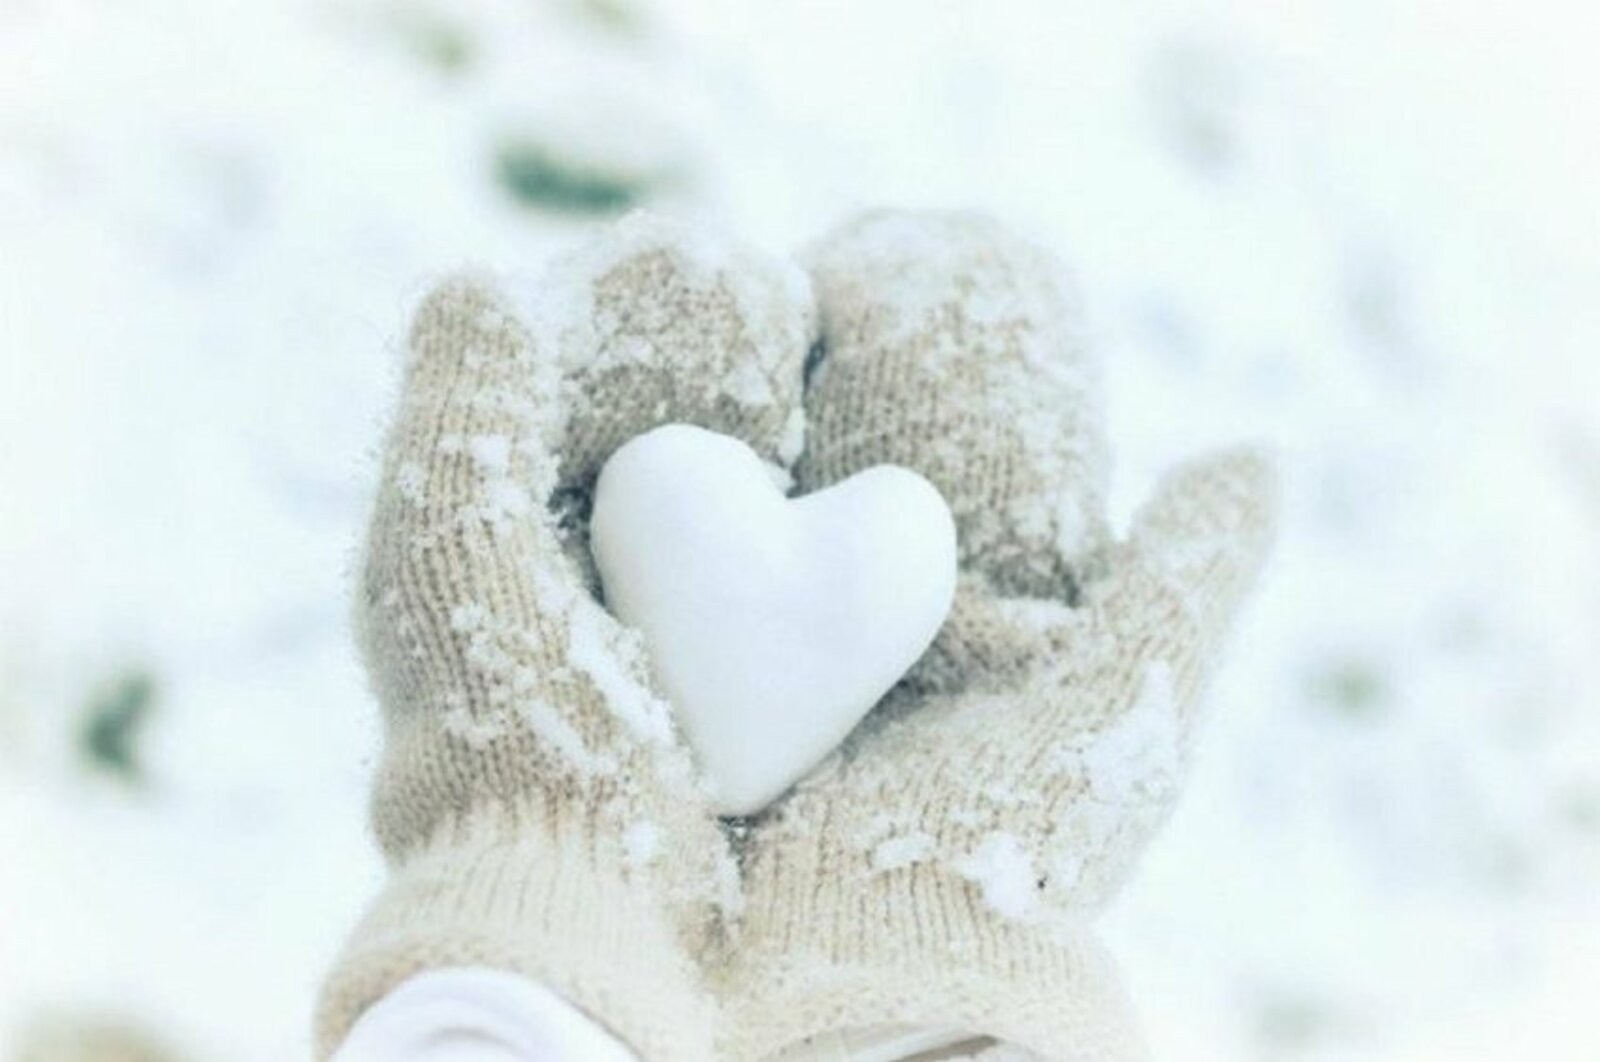 Я люблю снежку. Сердечко из снега. Счастье зима. Сердечко на снегу. Счастье зимой.